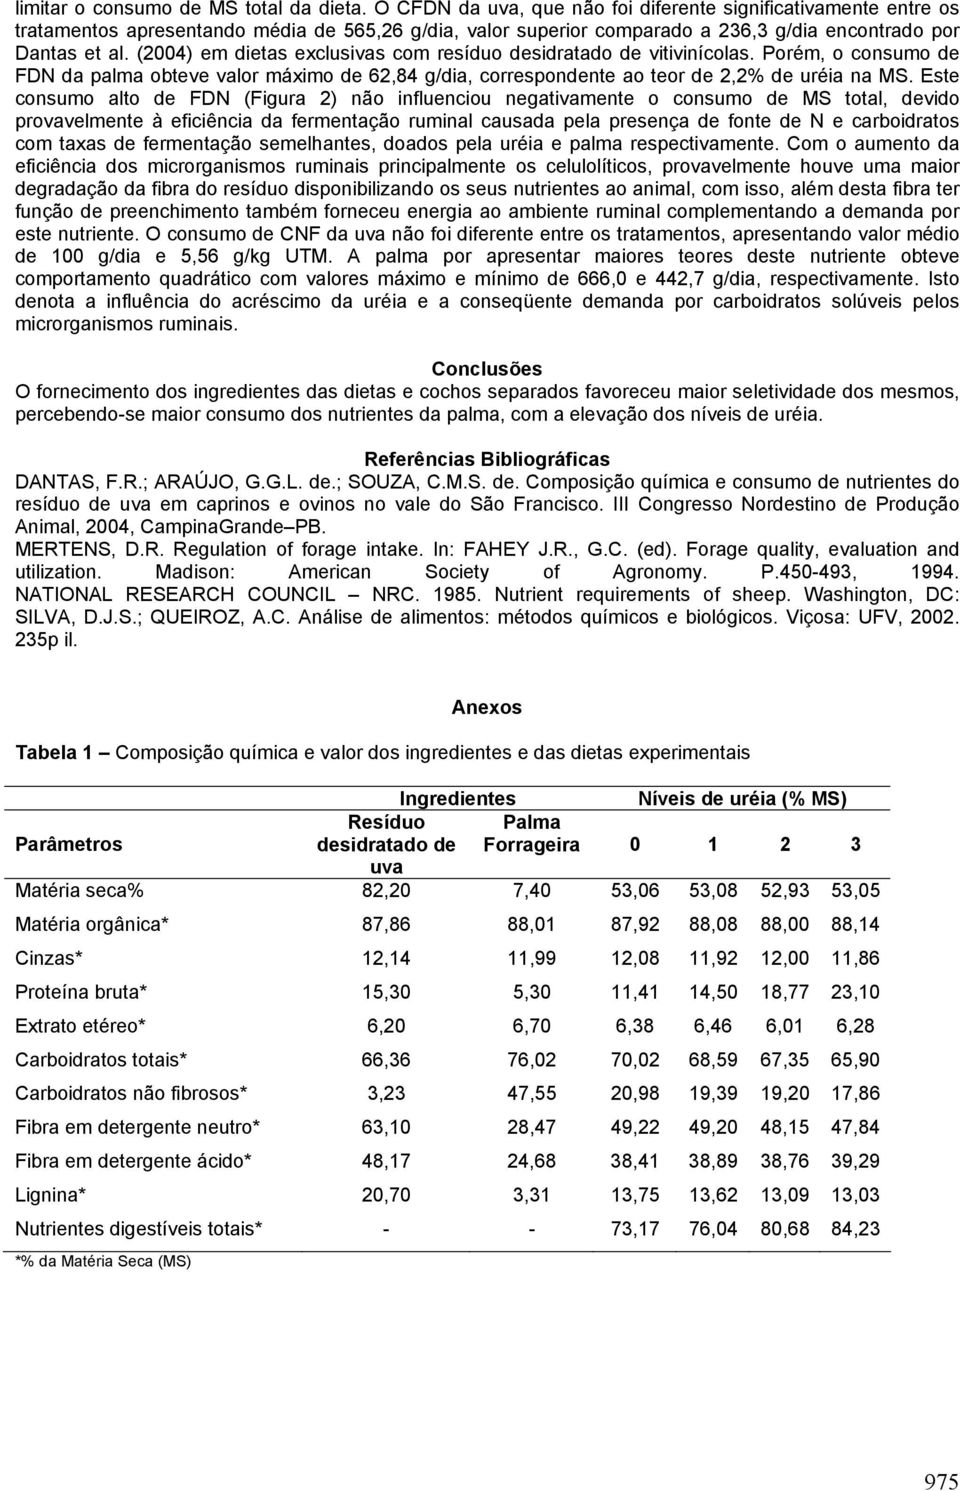 (2004) em dietas exclusivas com resíduo desidratado de vitivinícolas. Porém, o consumo de FDN da palma obteve valor máximo de 62,84 g/dia, correspondente ao teor de 2,2% de uréia na MS.